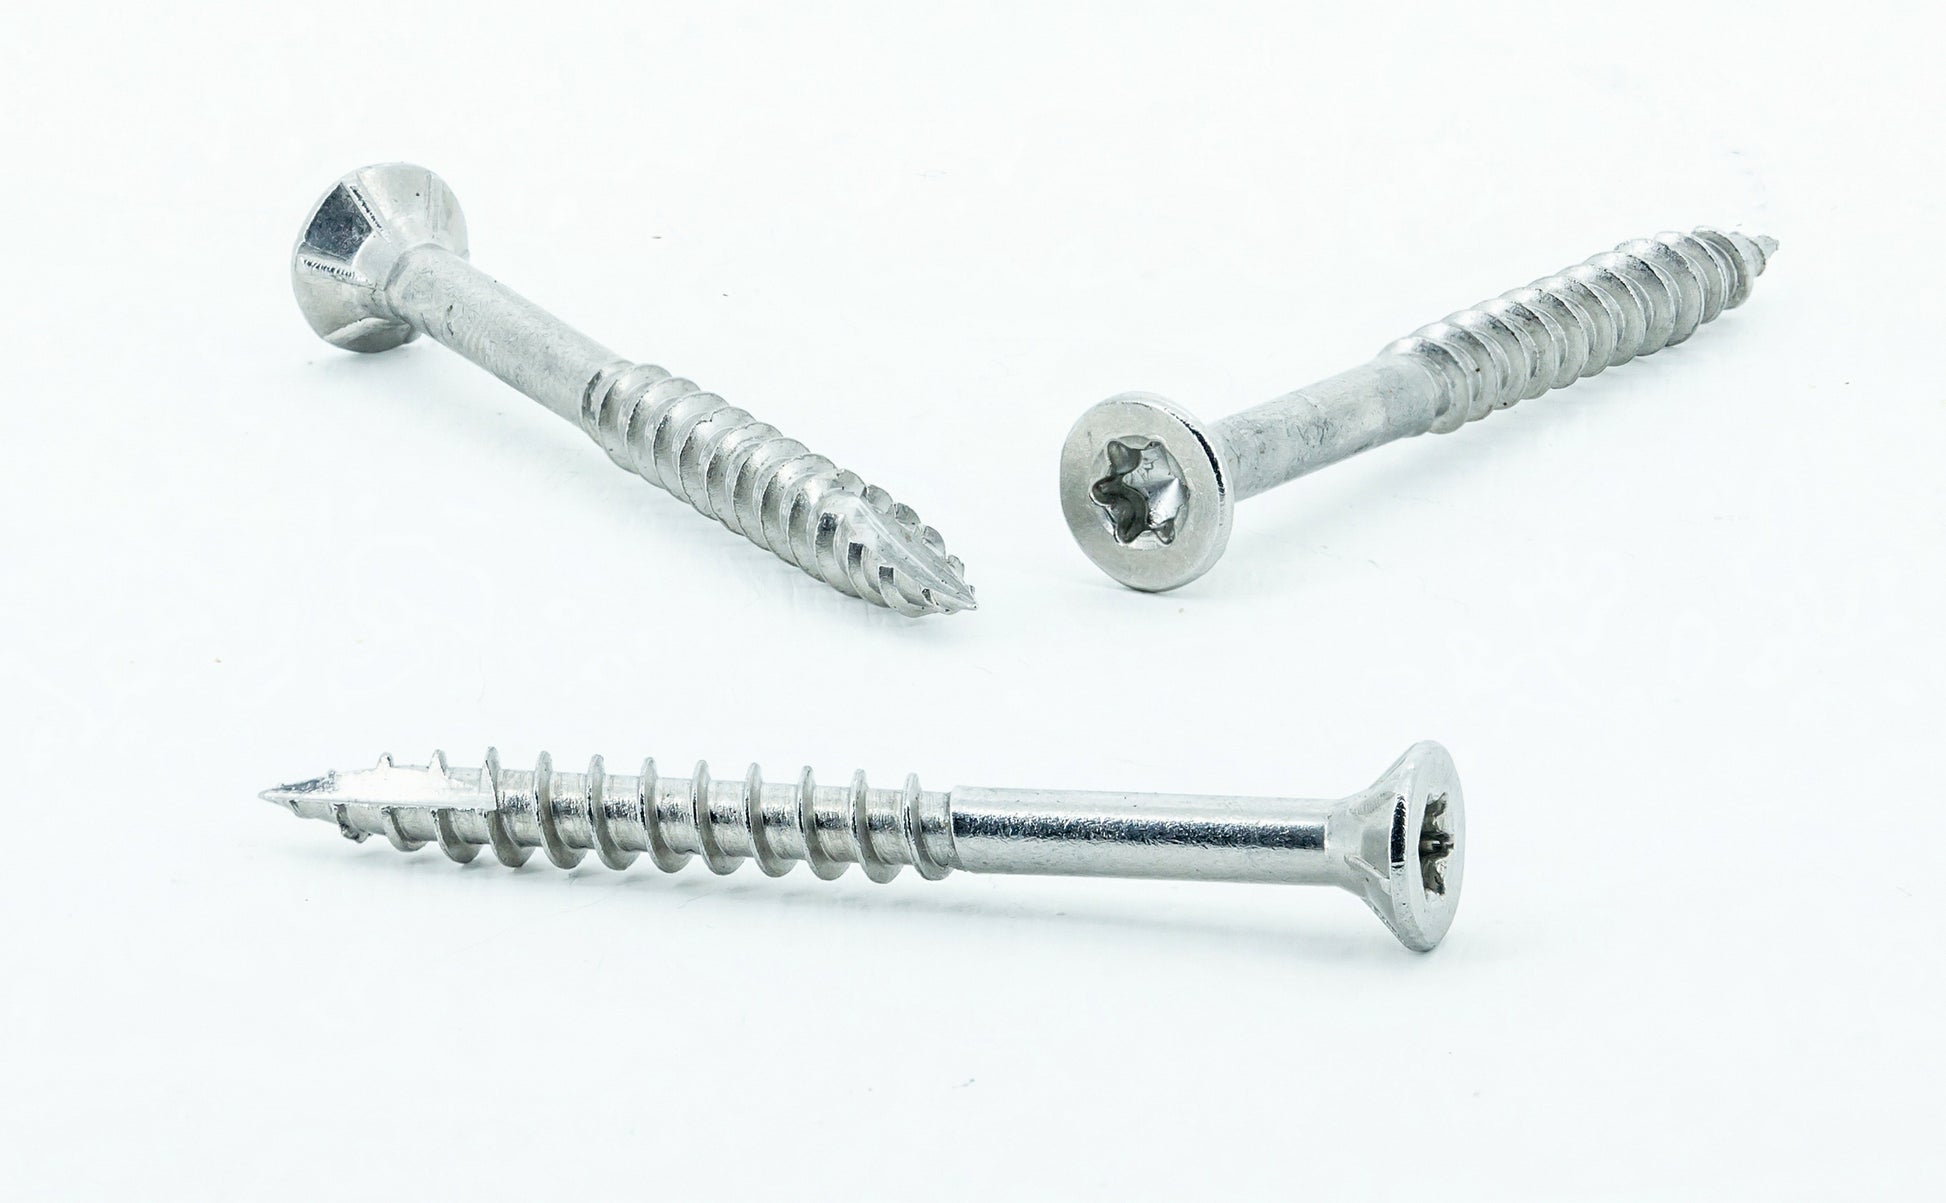 Stainless steel 2 inch wood screws